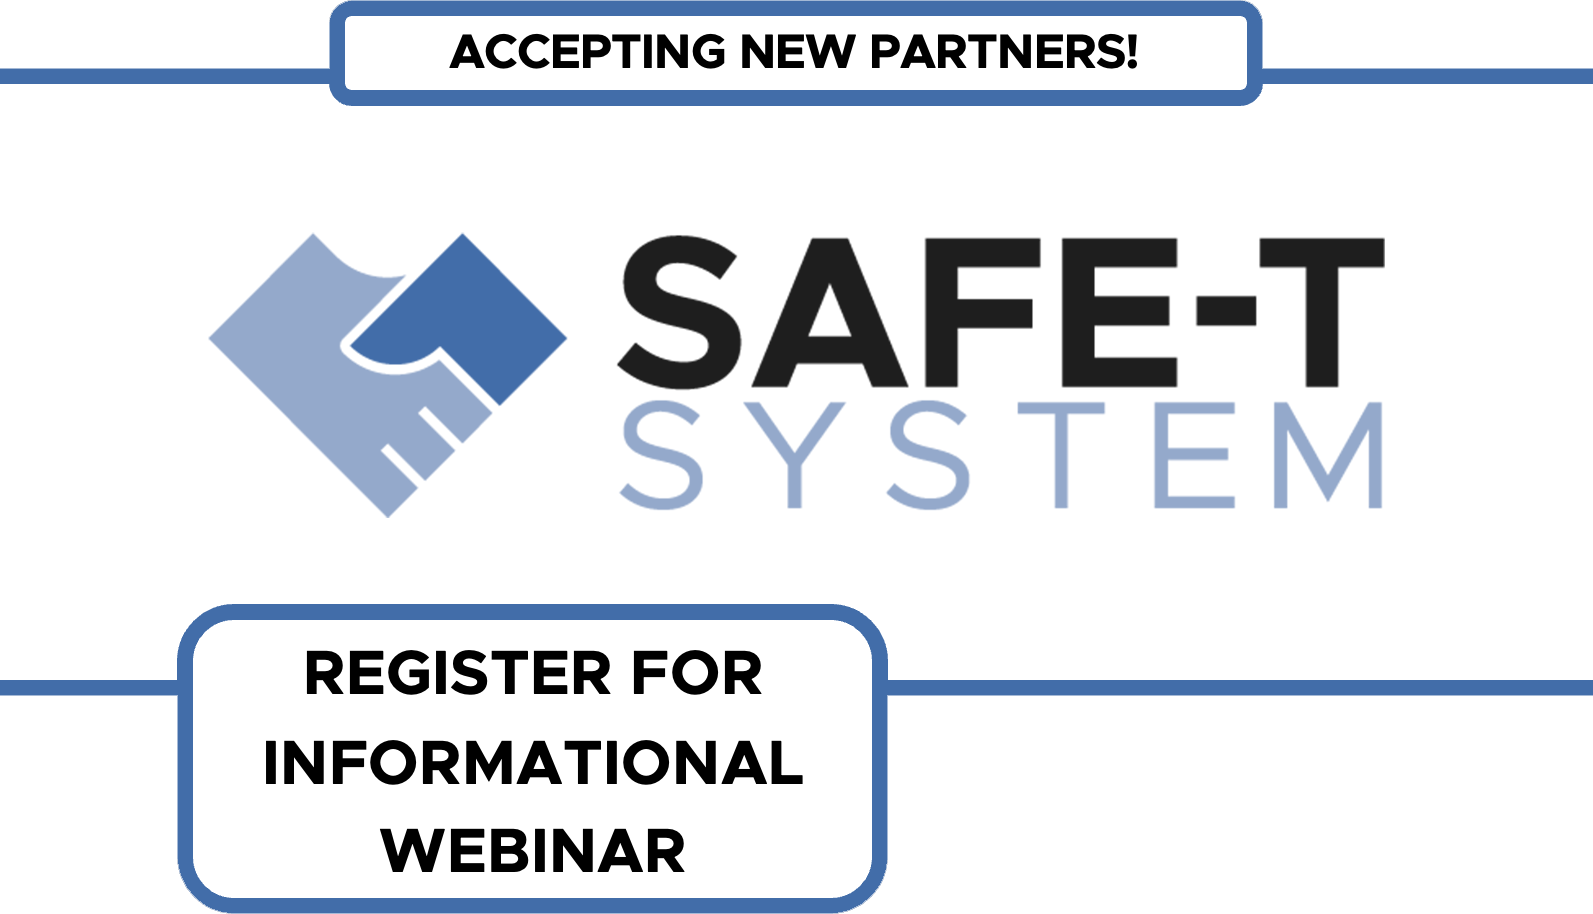 Register for a SAFE-T System informational webinar